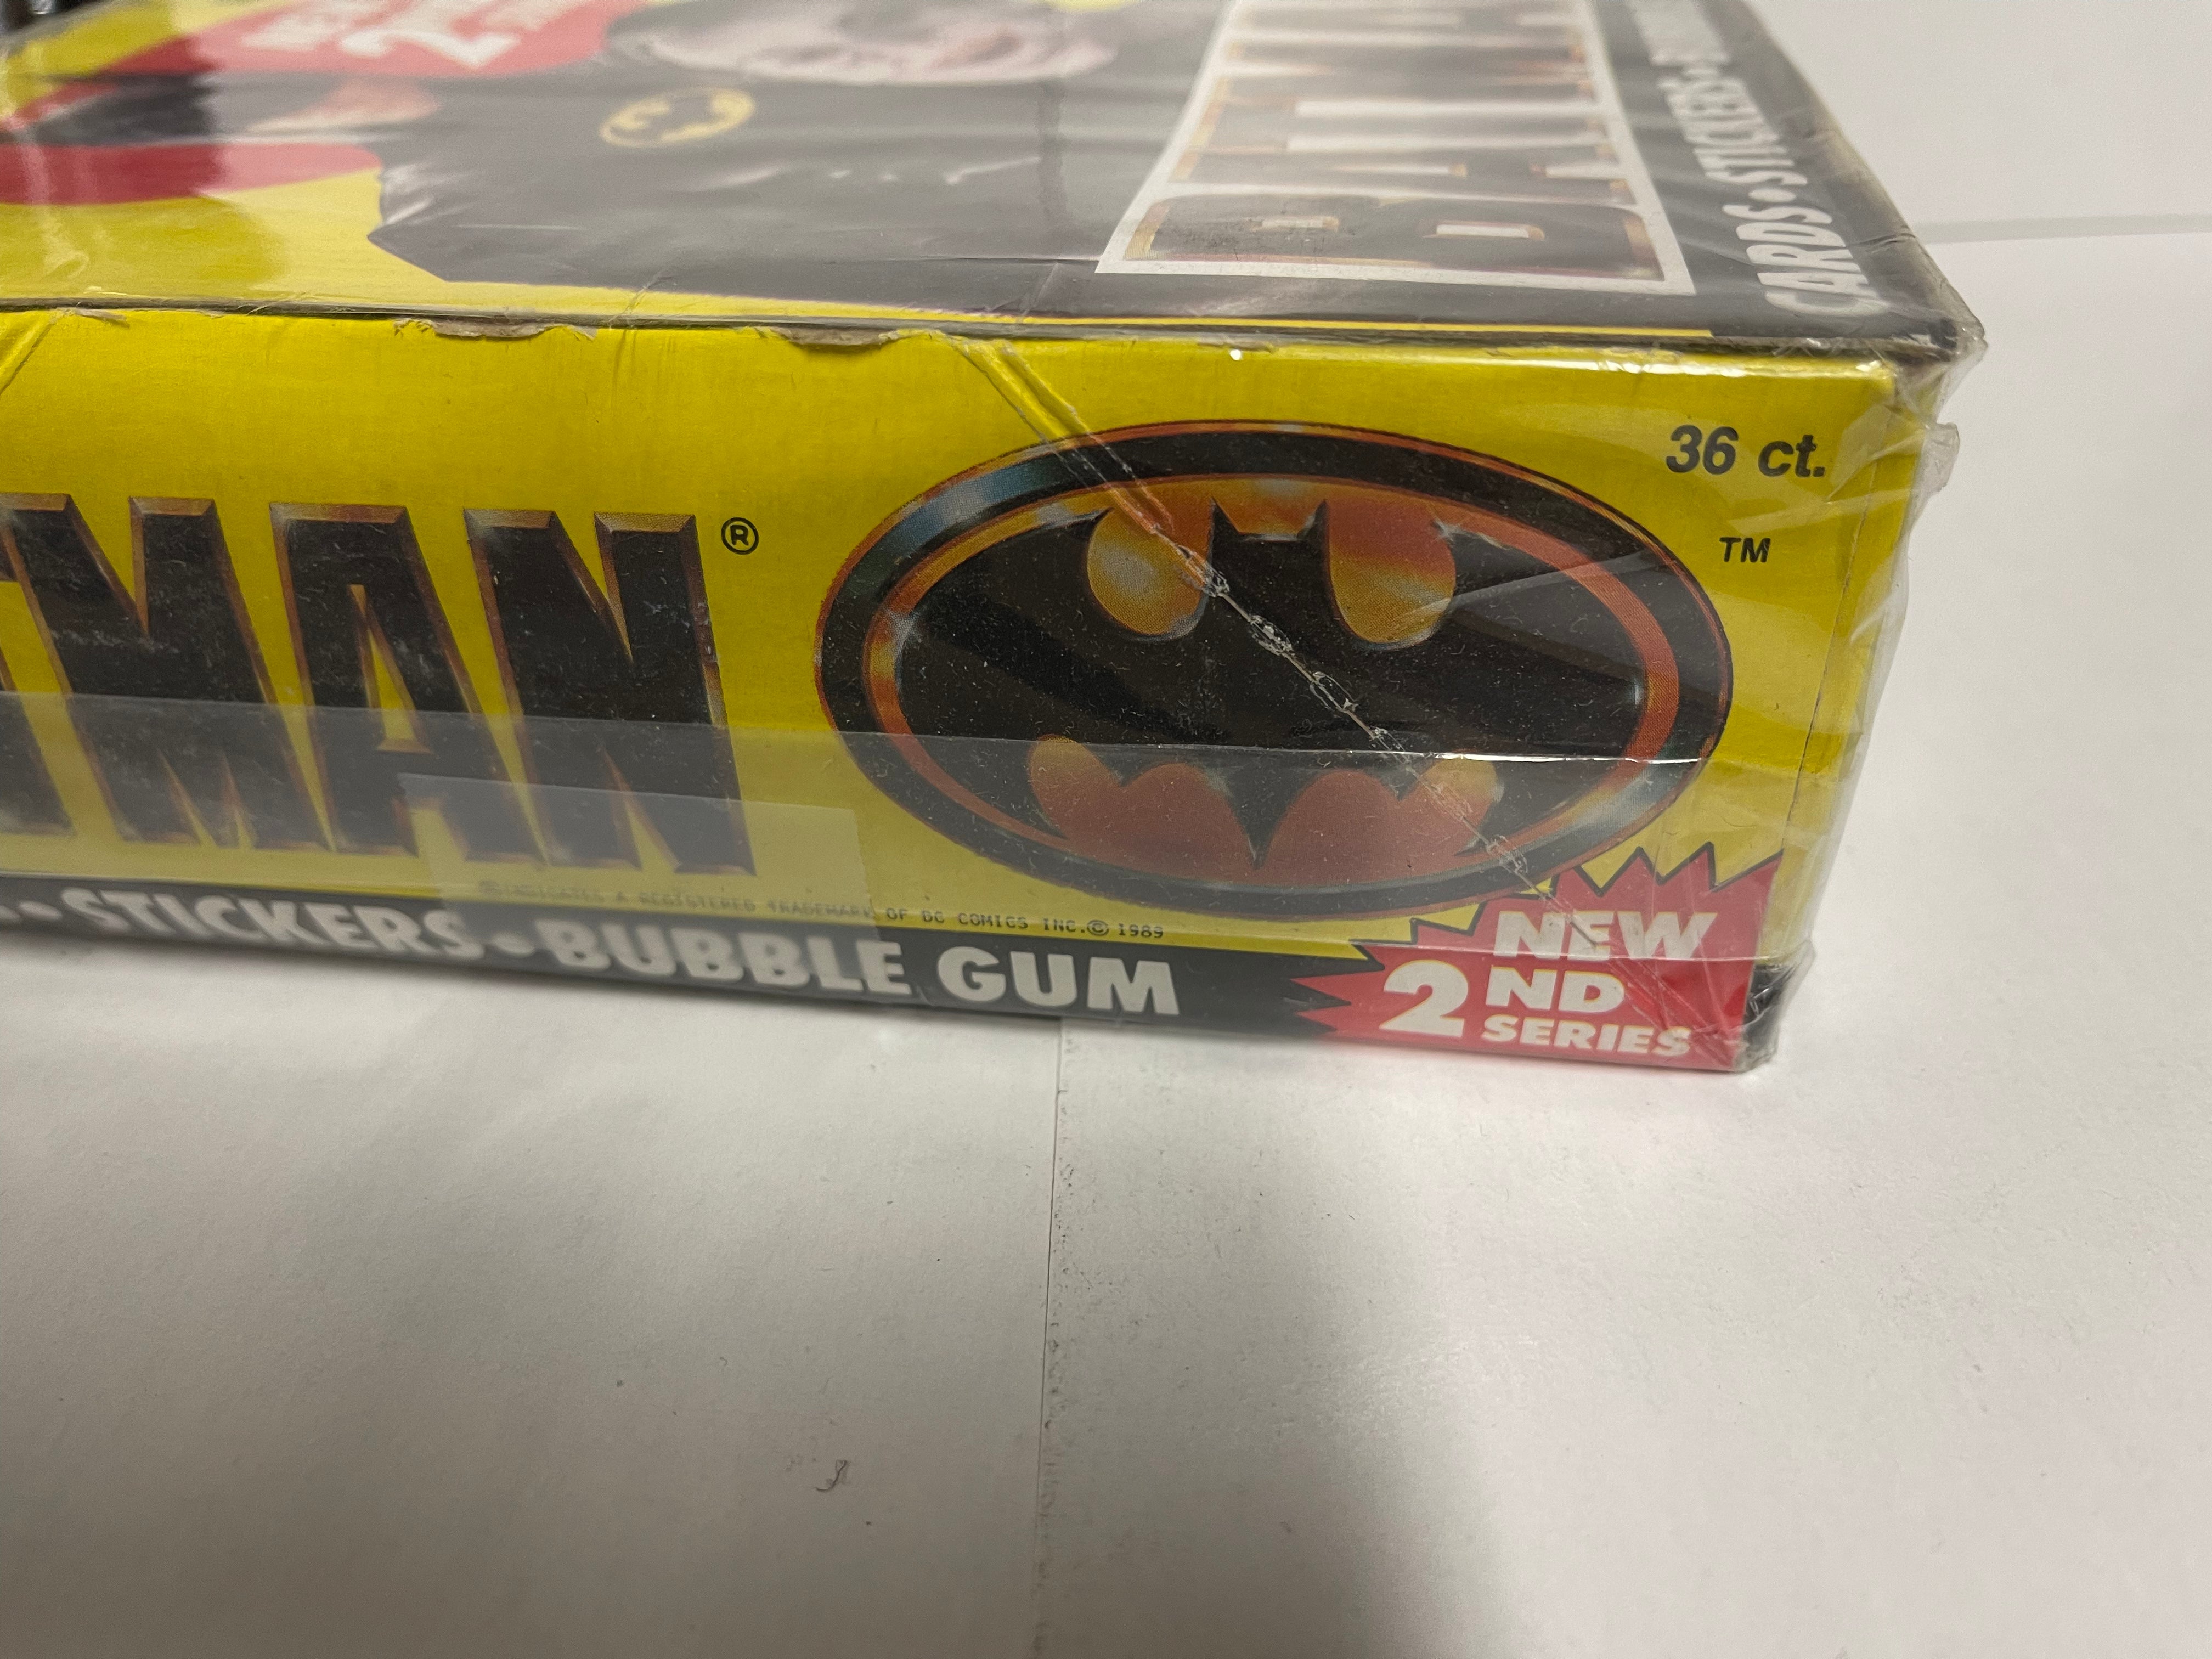 Batman Movie 2 Topps cards 36 packs box 1989